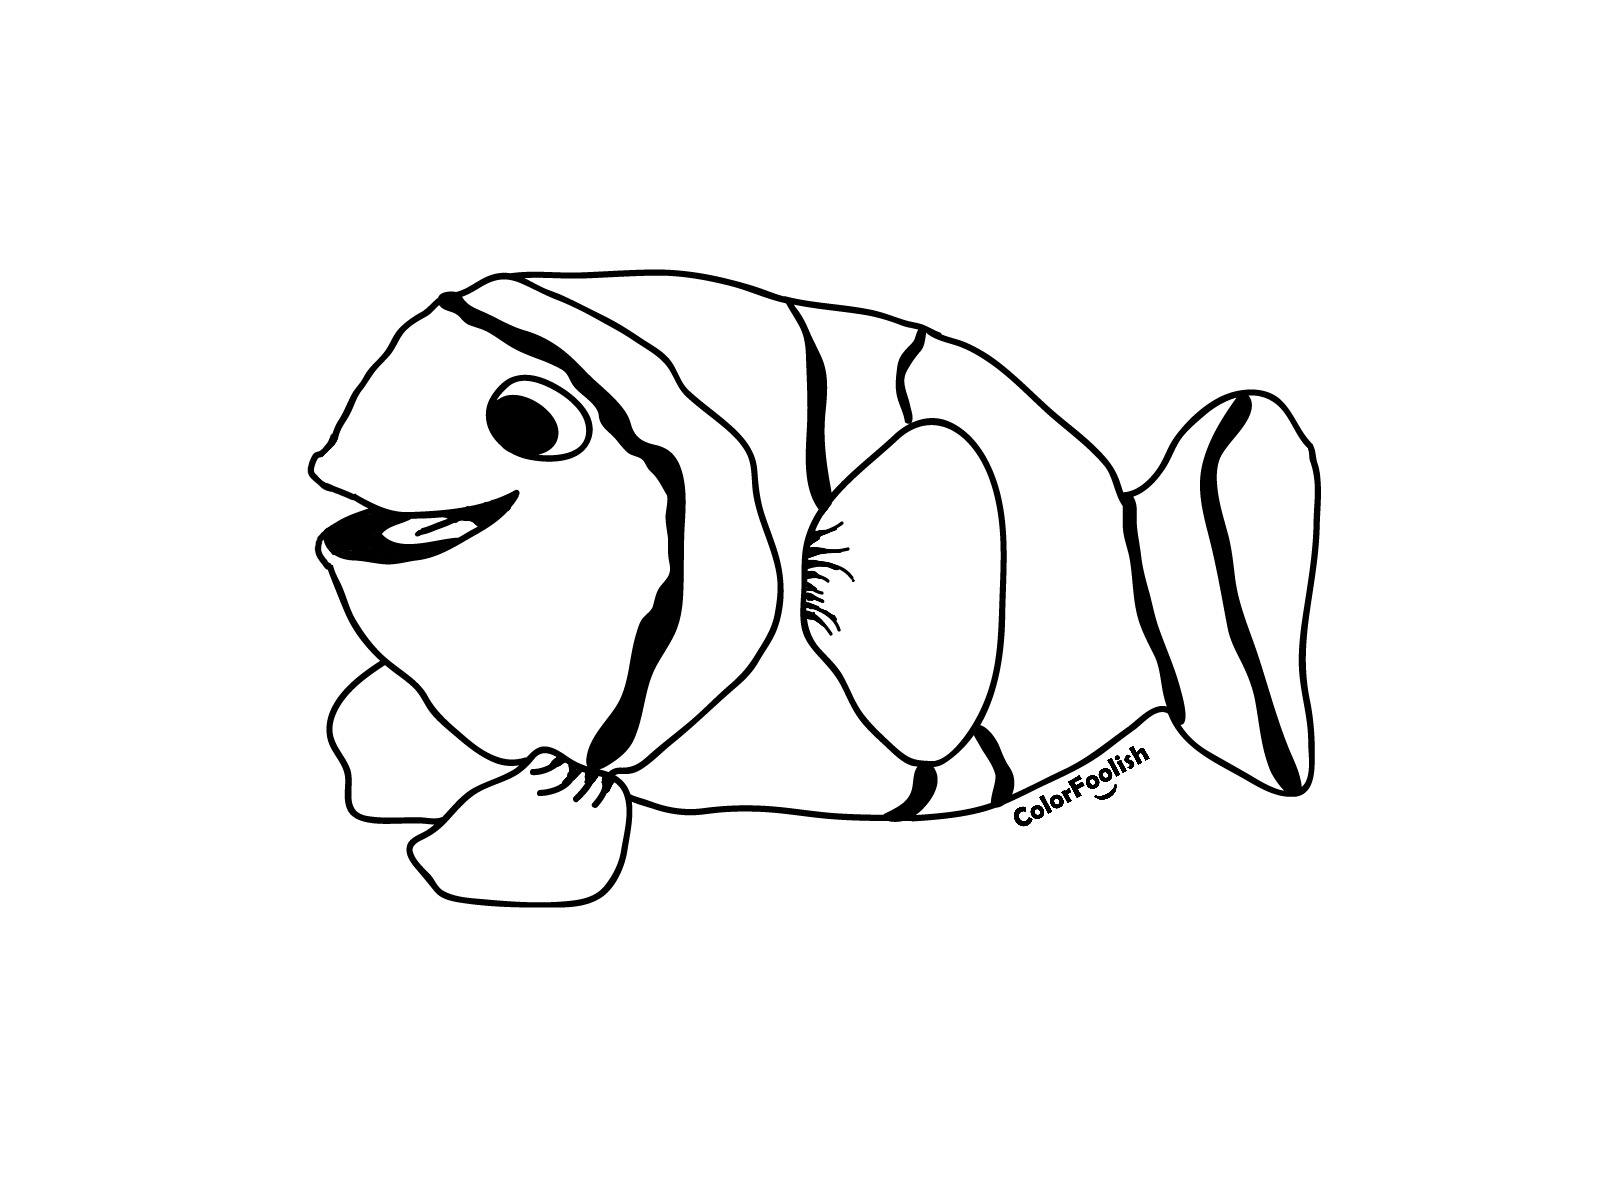 Dibujo para colorear de un pez payaso sonriente